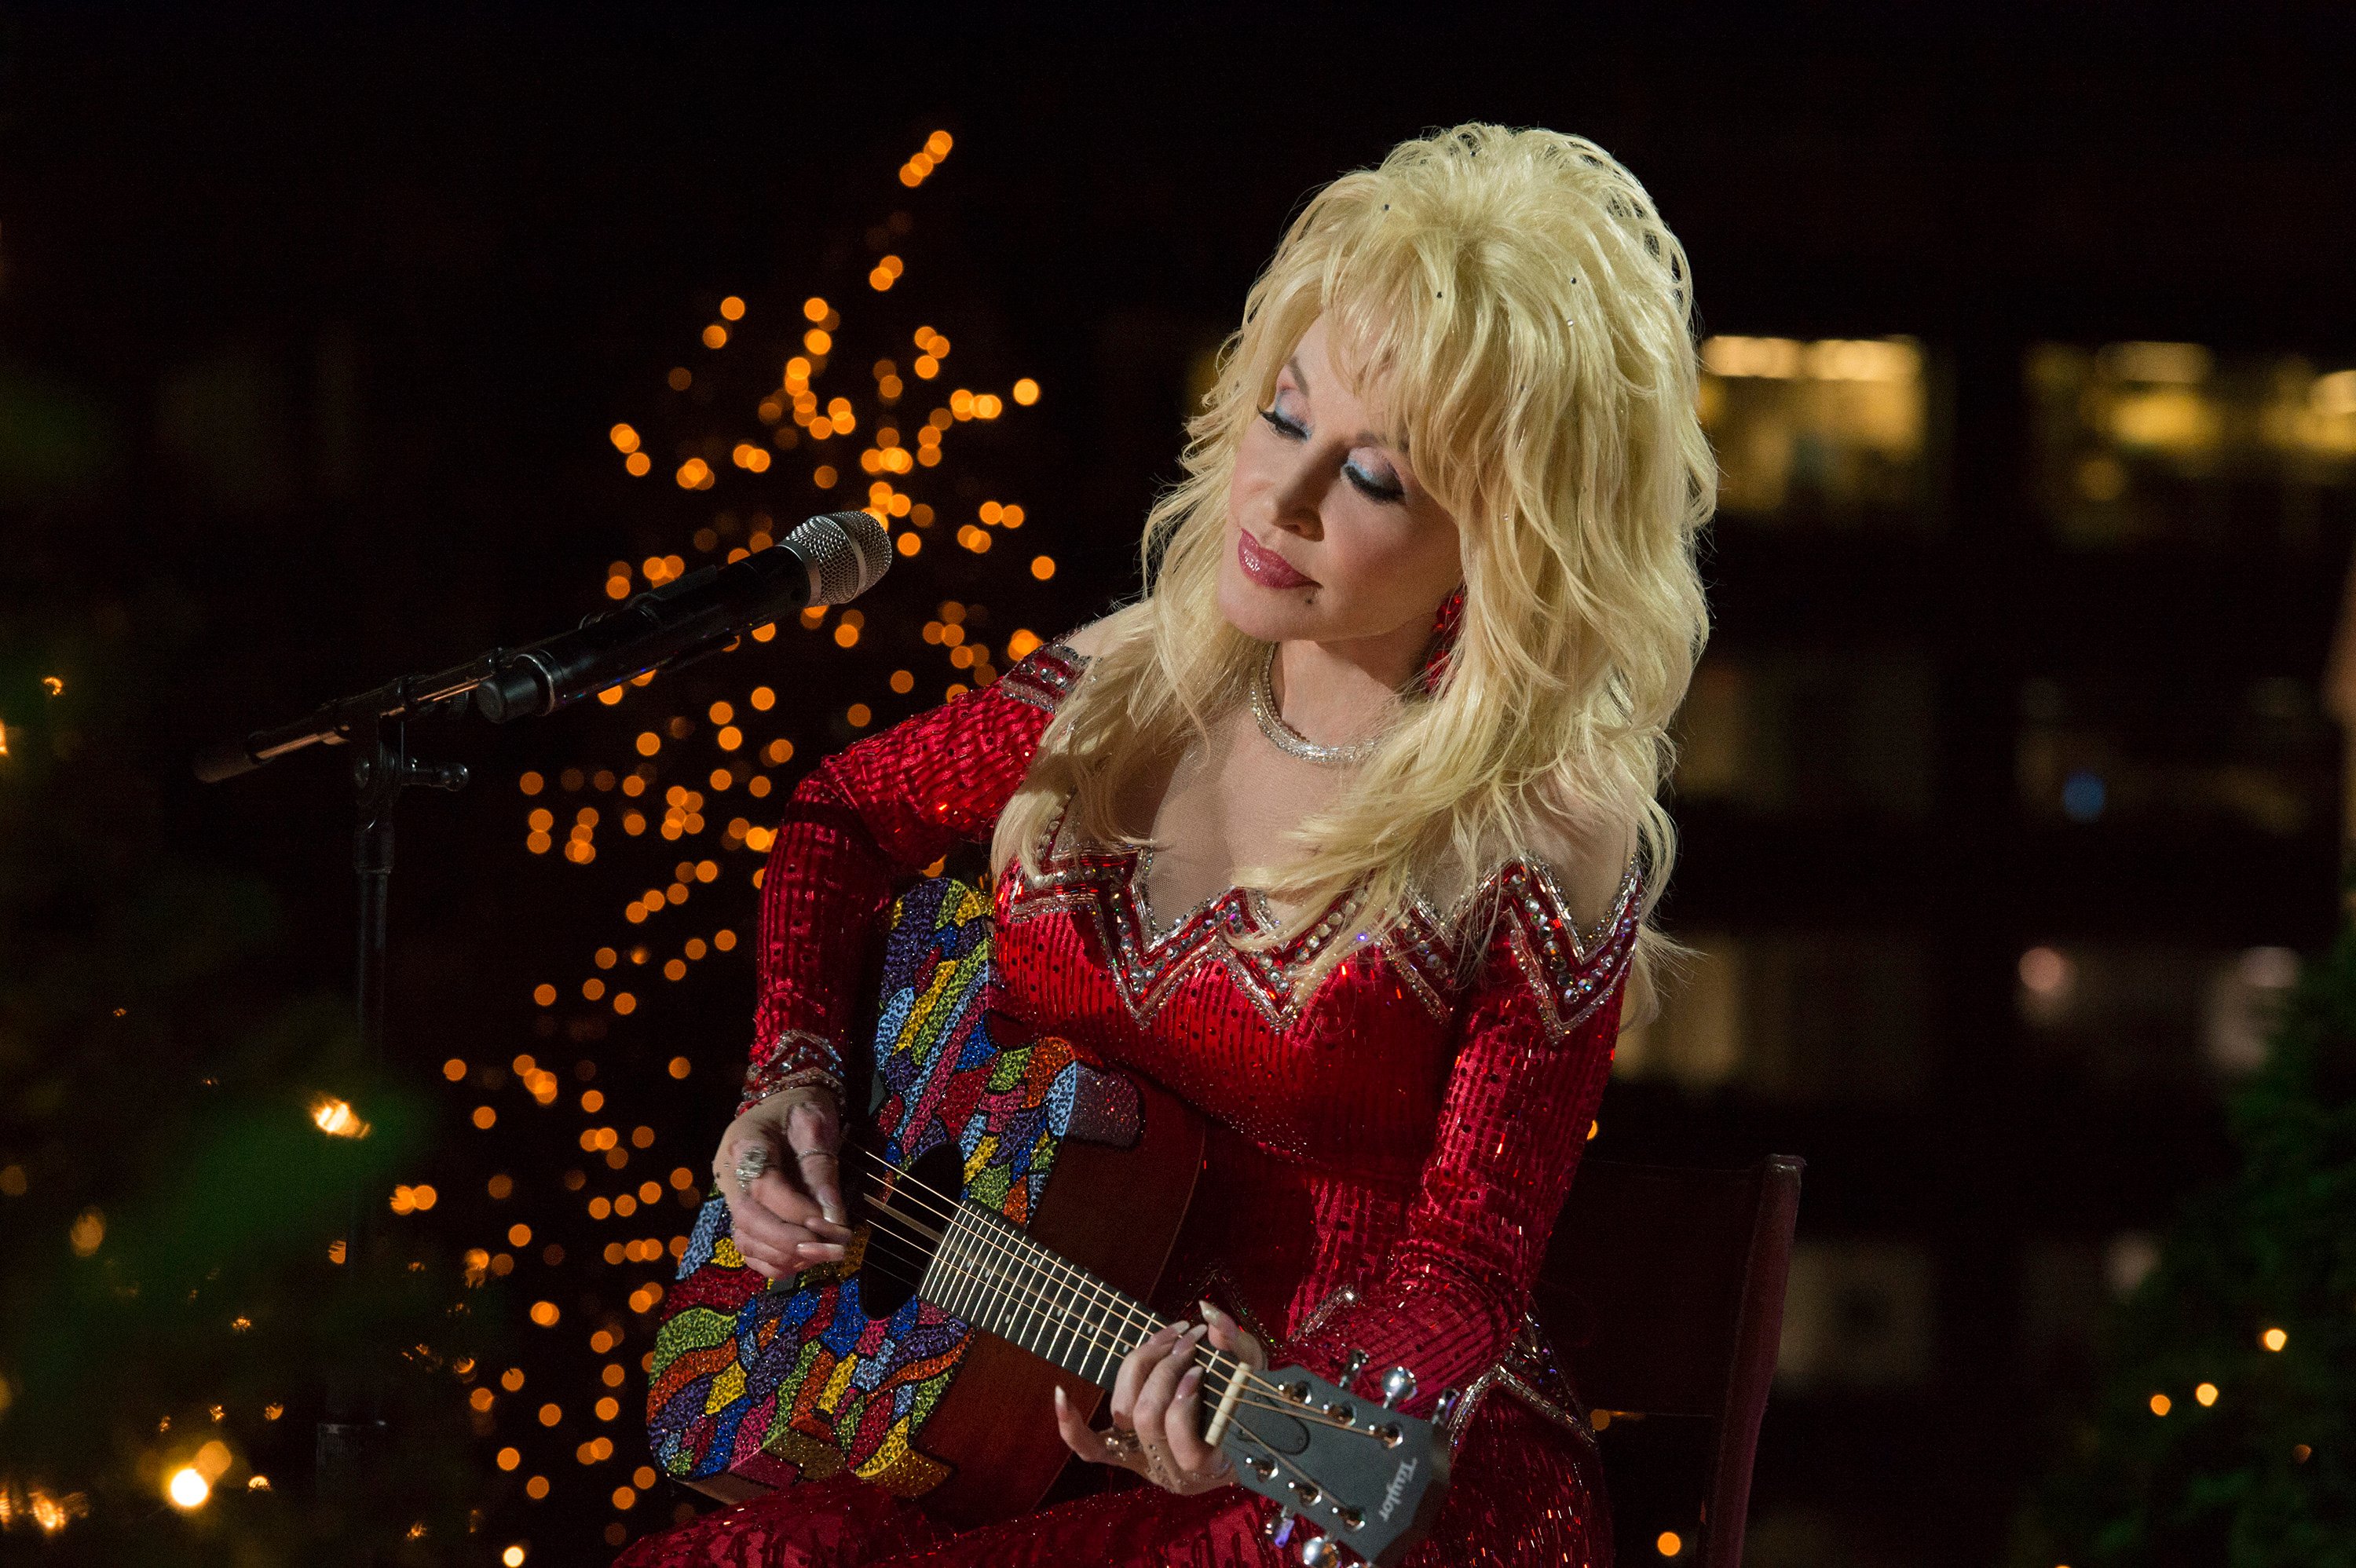 Perché Dolly Parton ha ricevuto "una frustata" per aver partecipato a Babbo Natale segreto a scuola